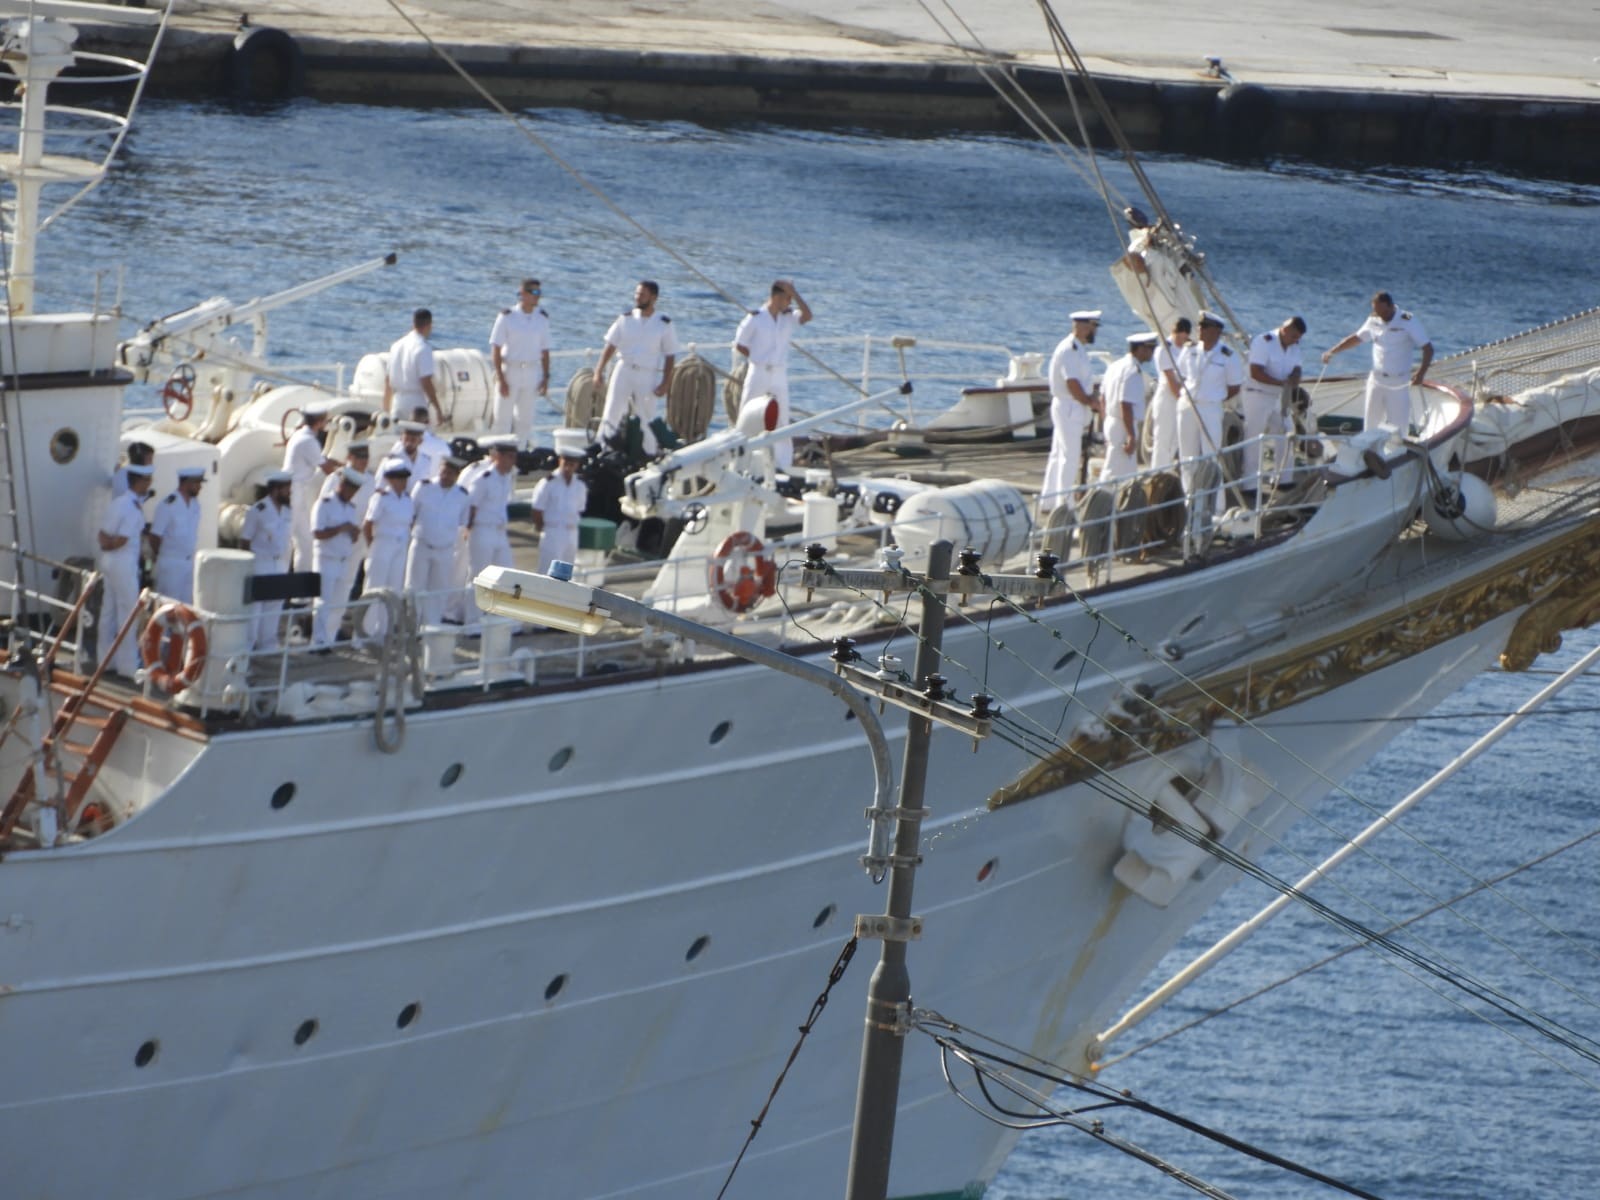 Port call of Spanish Navy training ship ‘Juan Sebastián de Elcano’ in Curaçao.